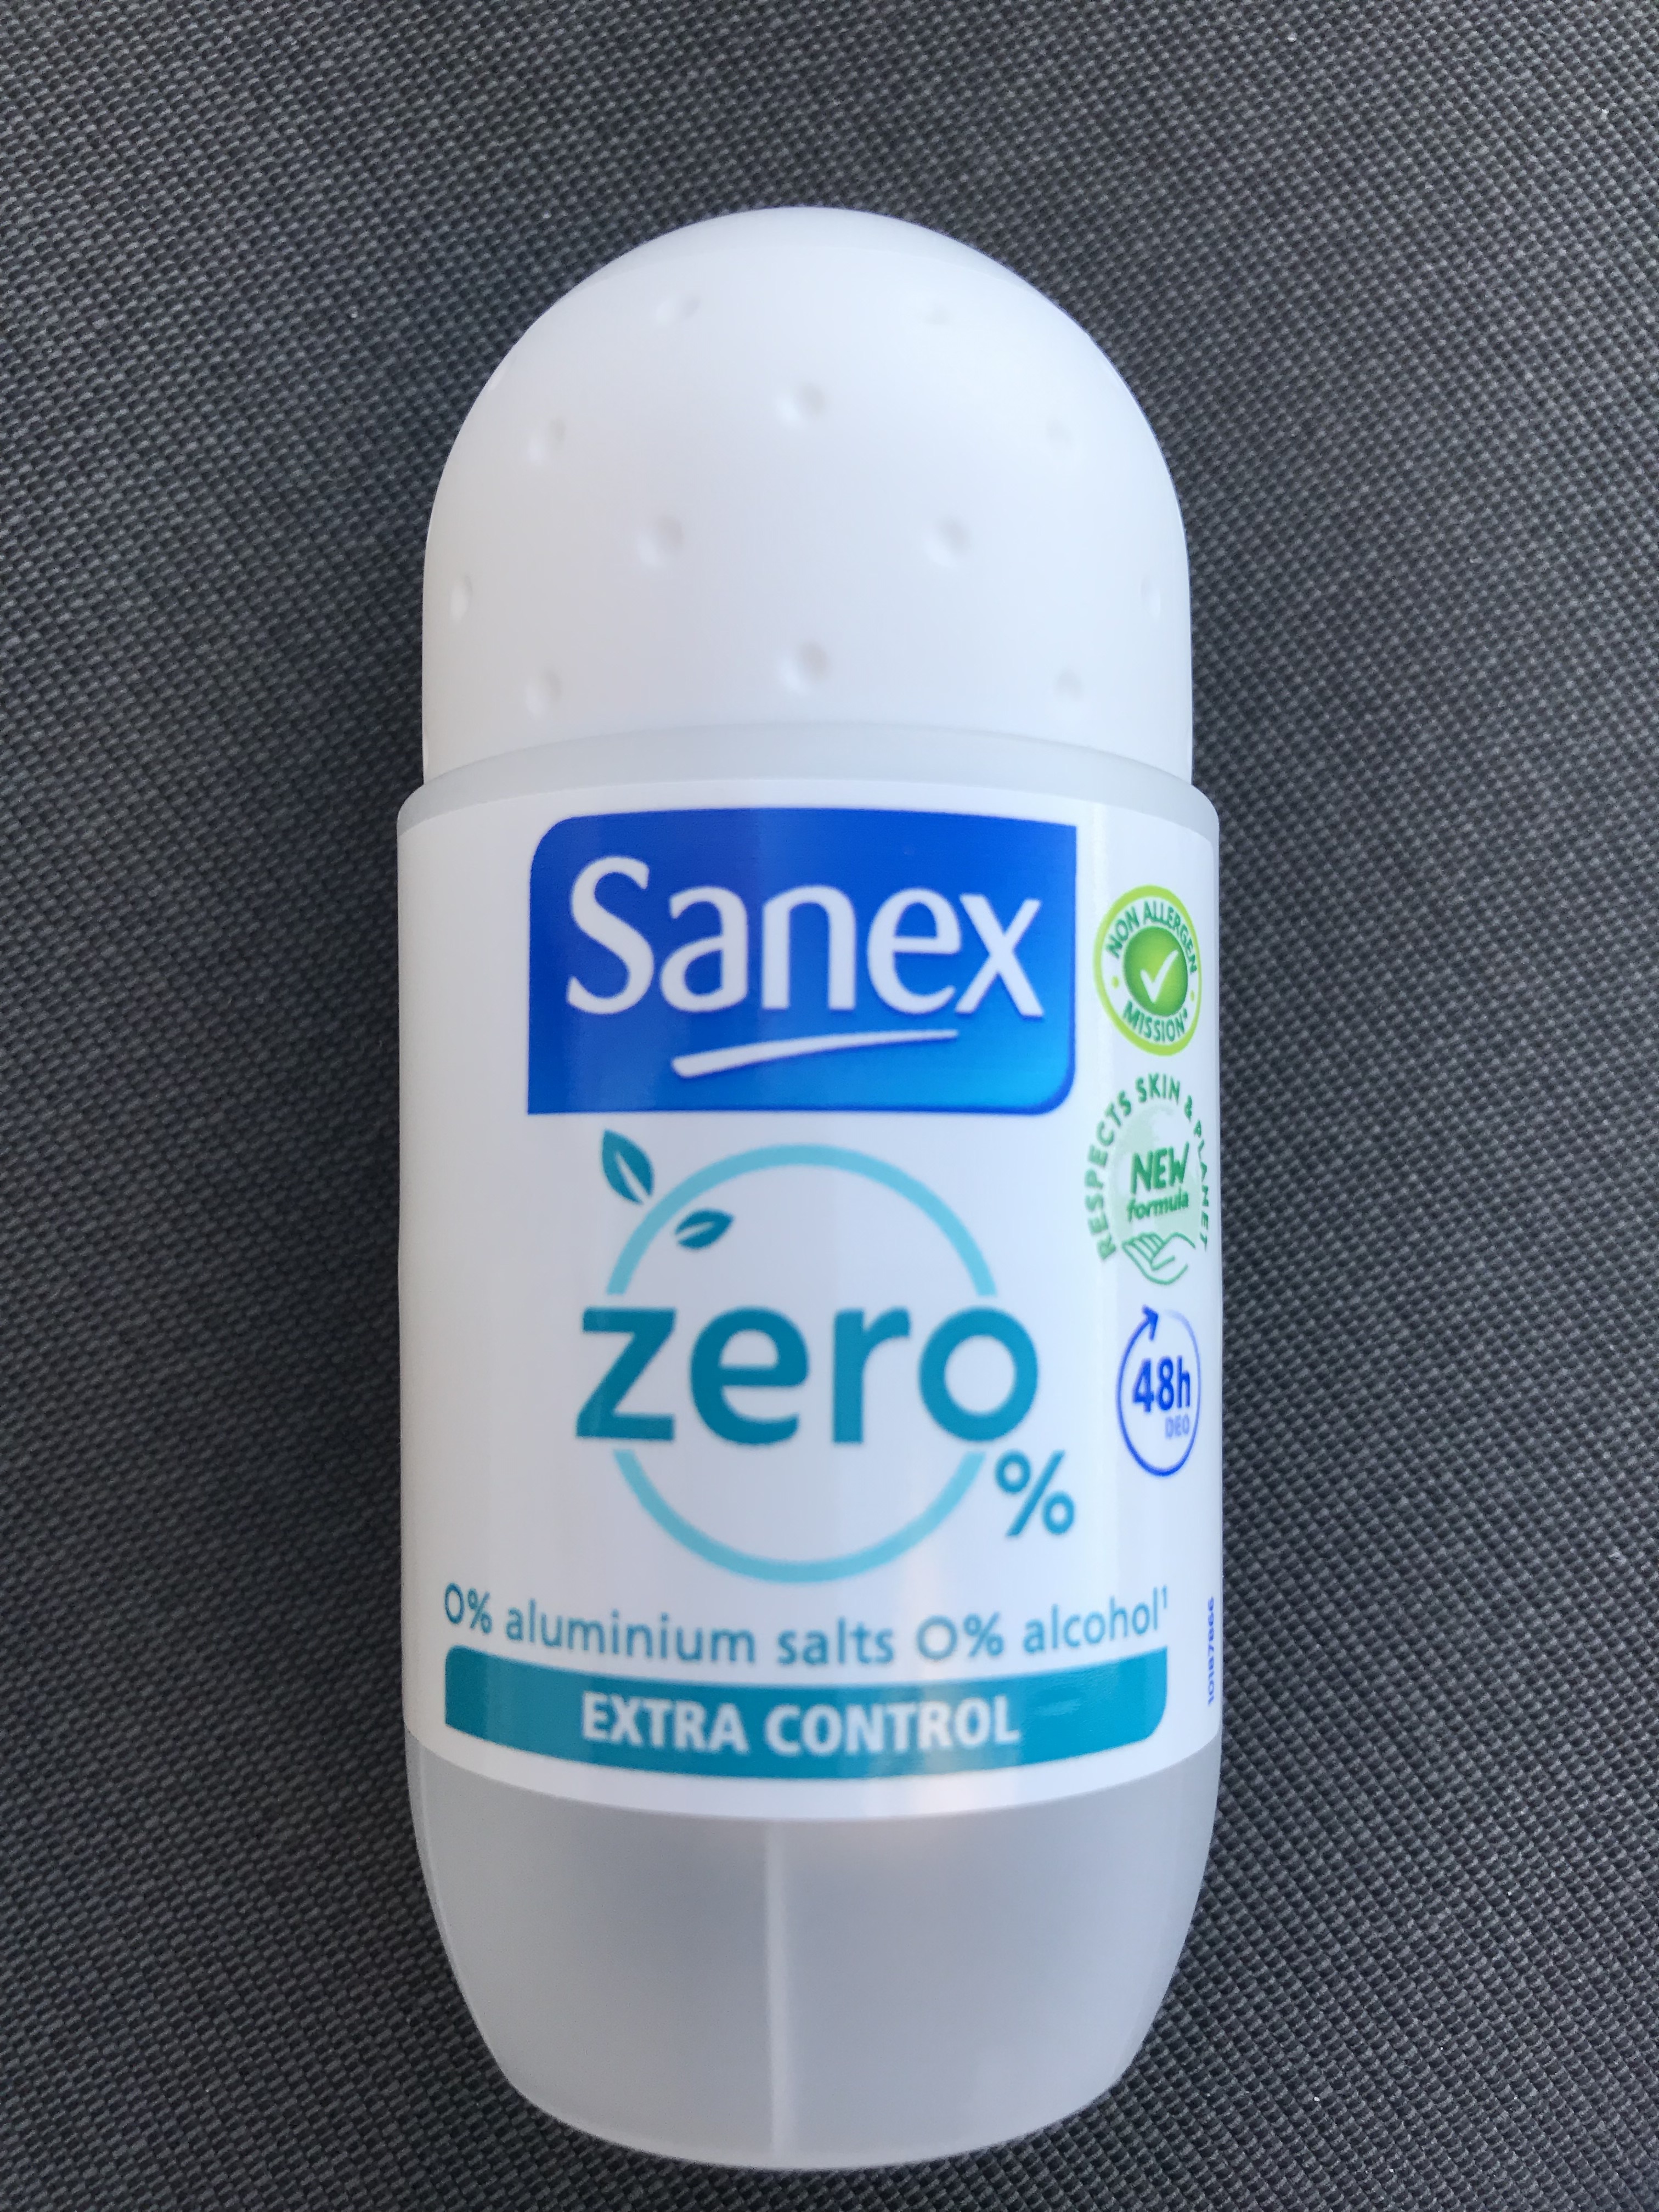 Sanex Zero Deodorant